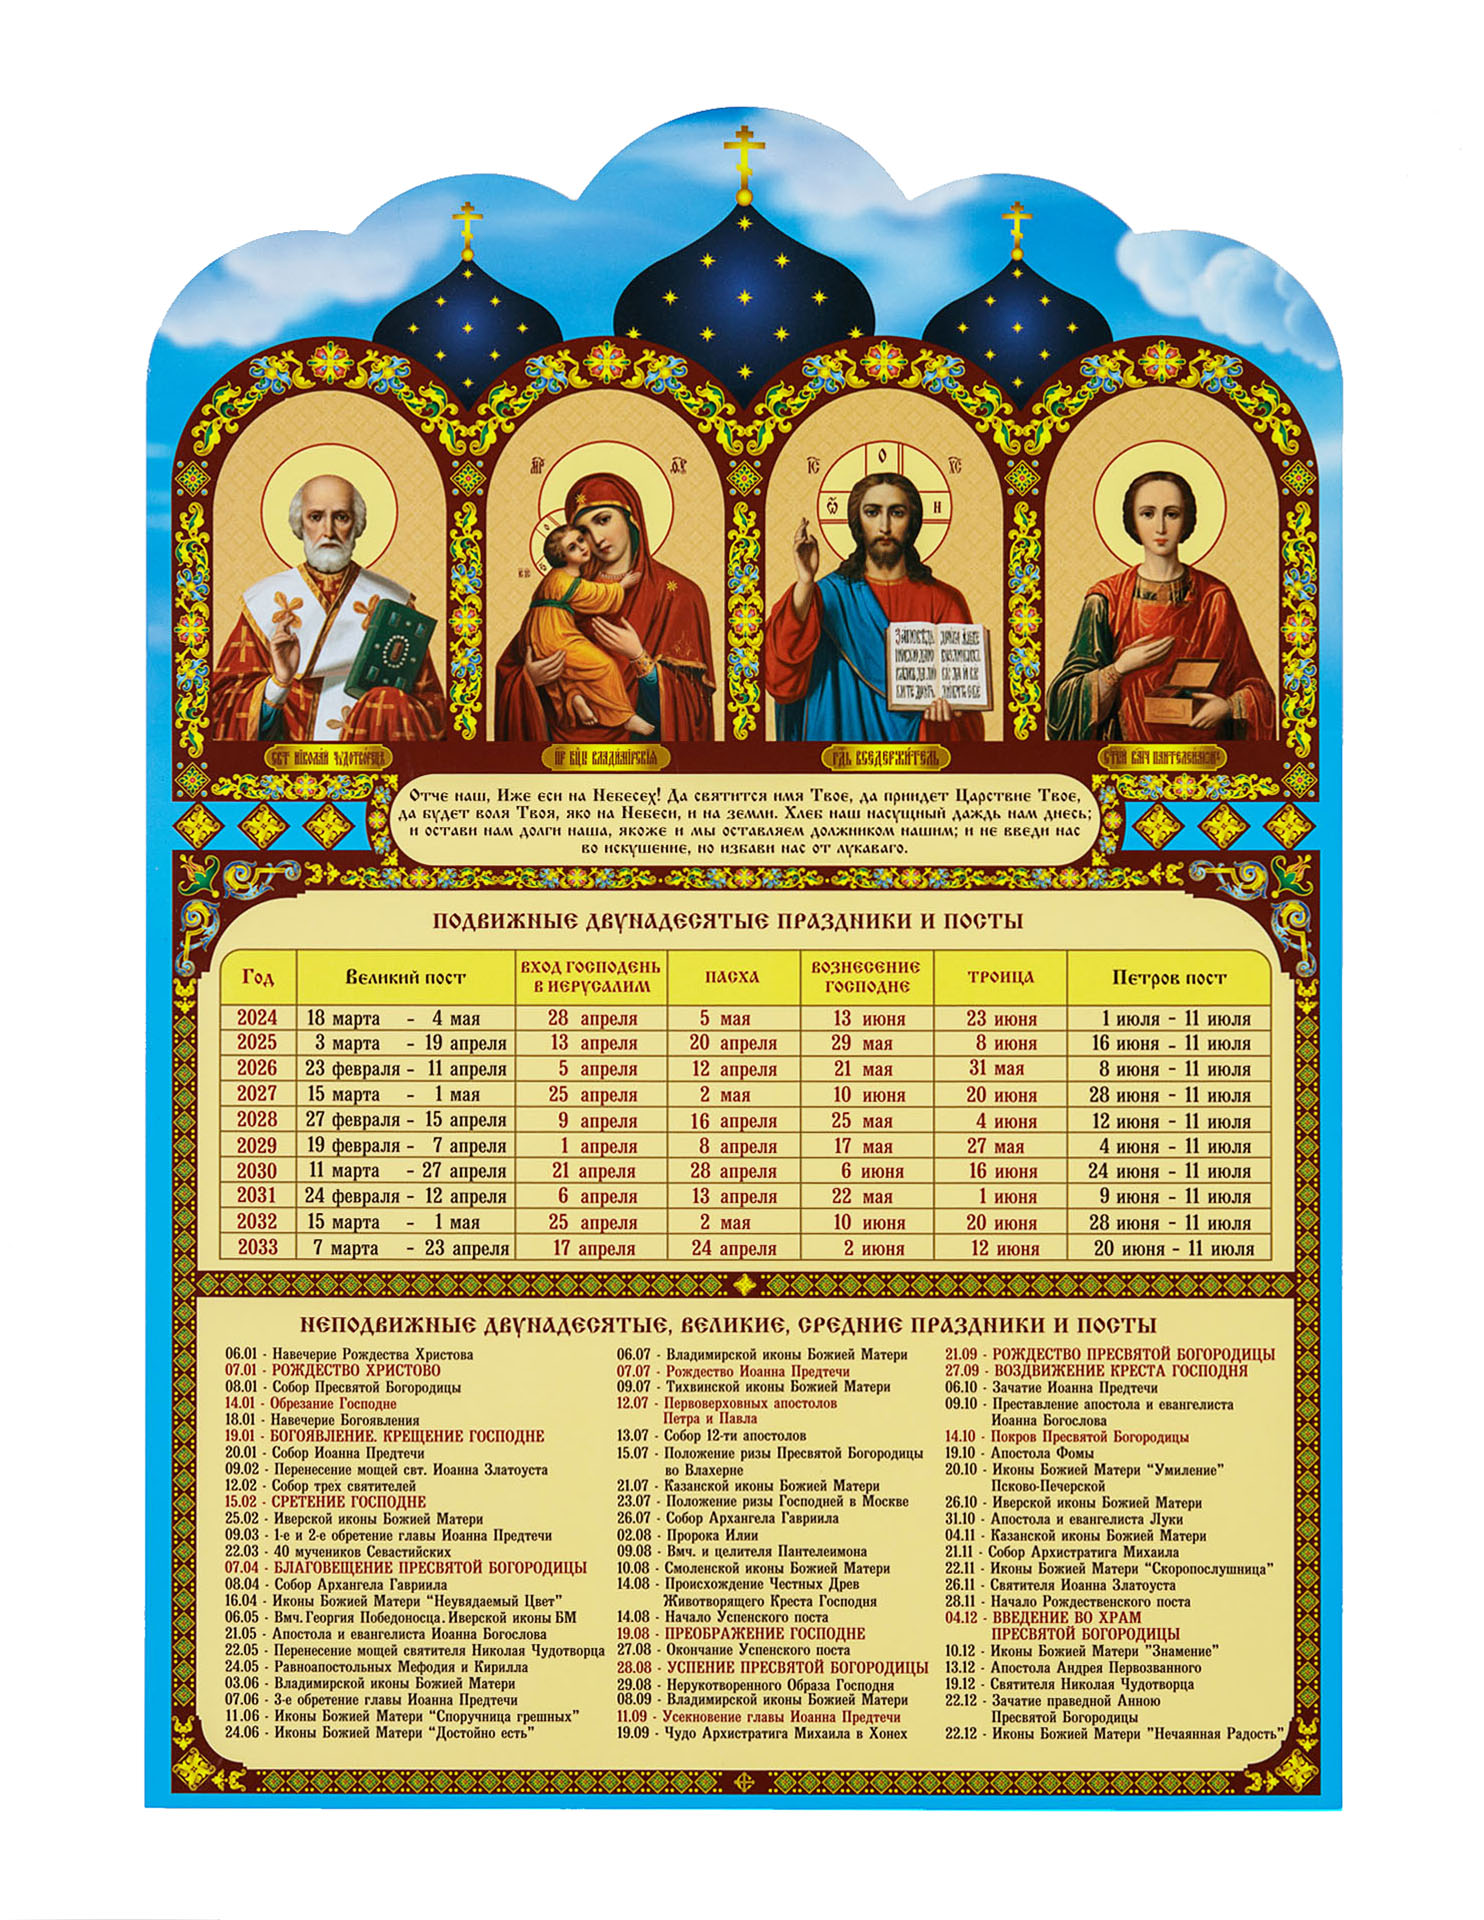 Православные праздники в марте и апреле